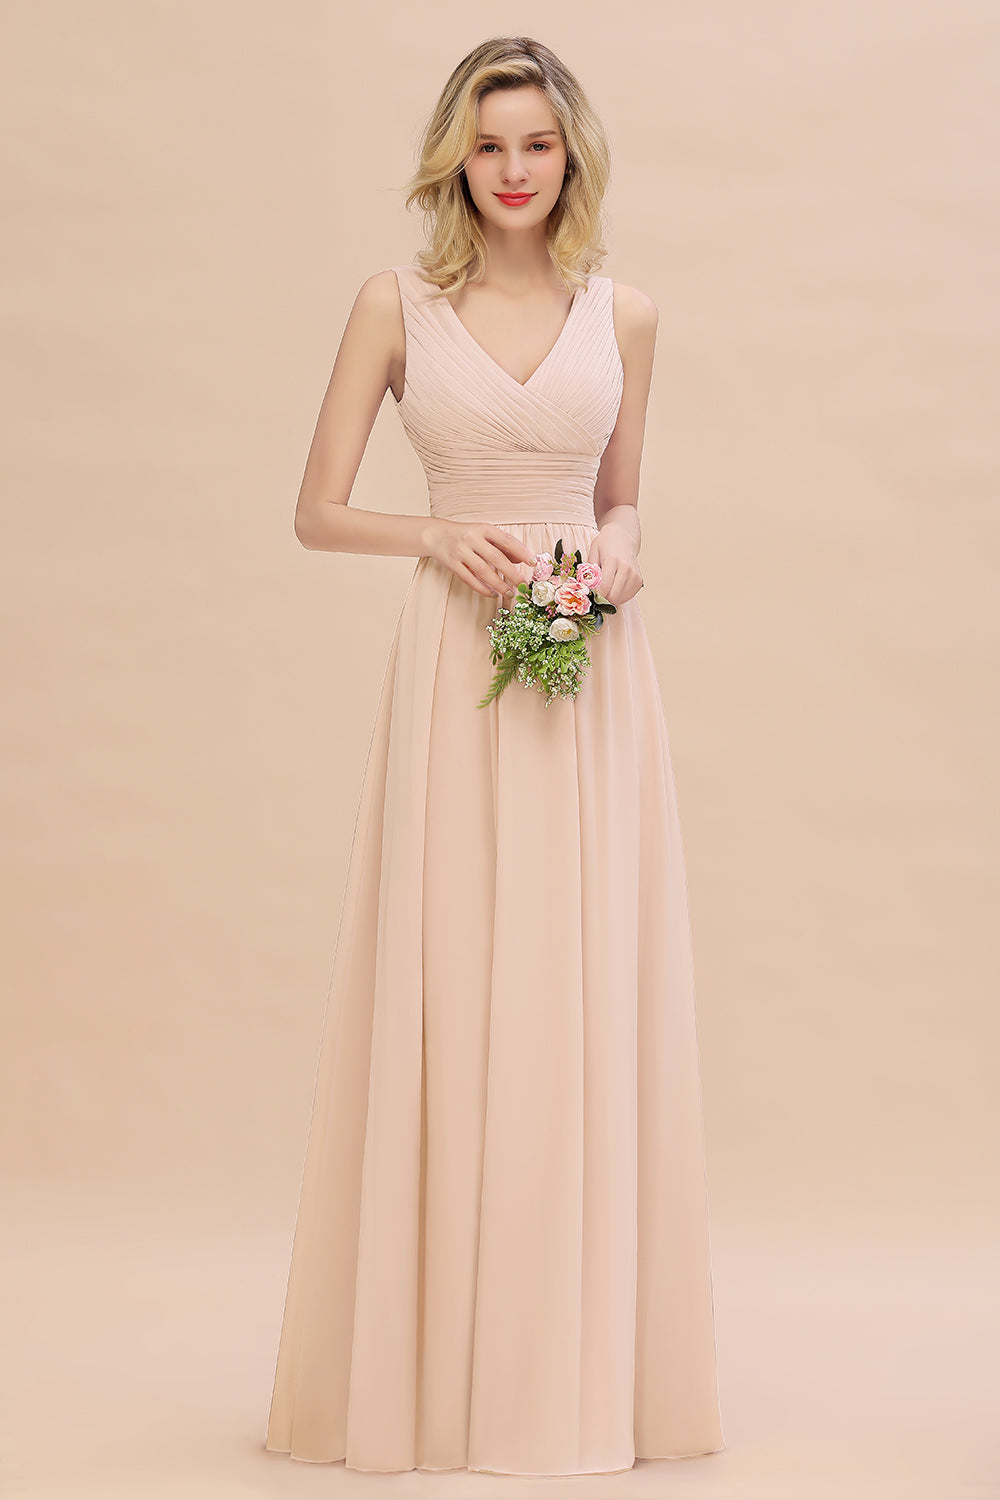 Elegant V-Neck Dusty Rose Chiffon Bridesmaid Dress with Ruffle